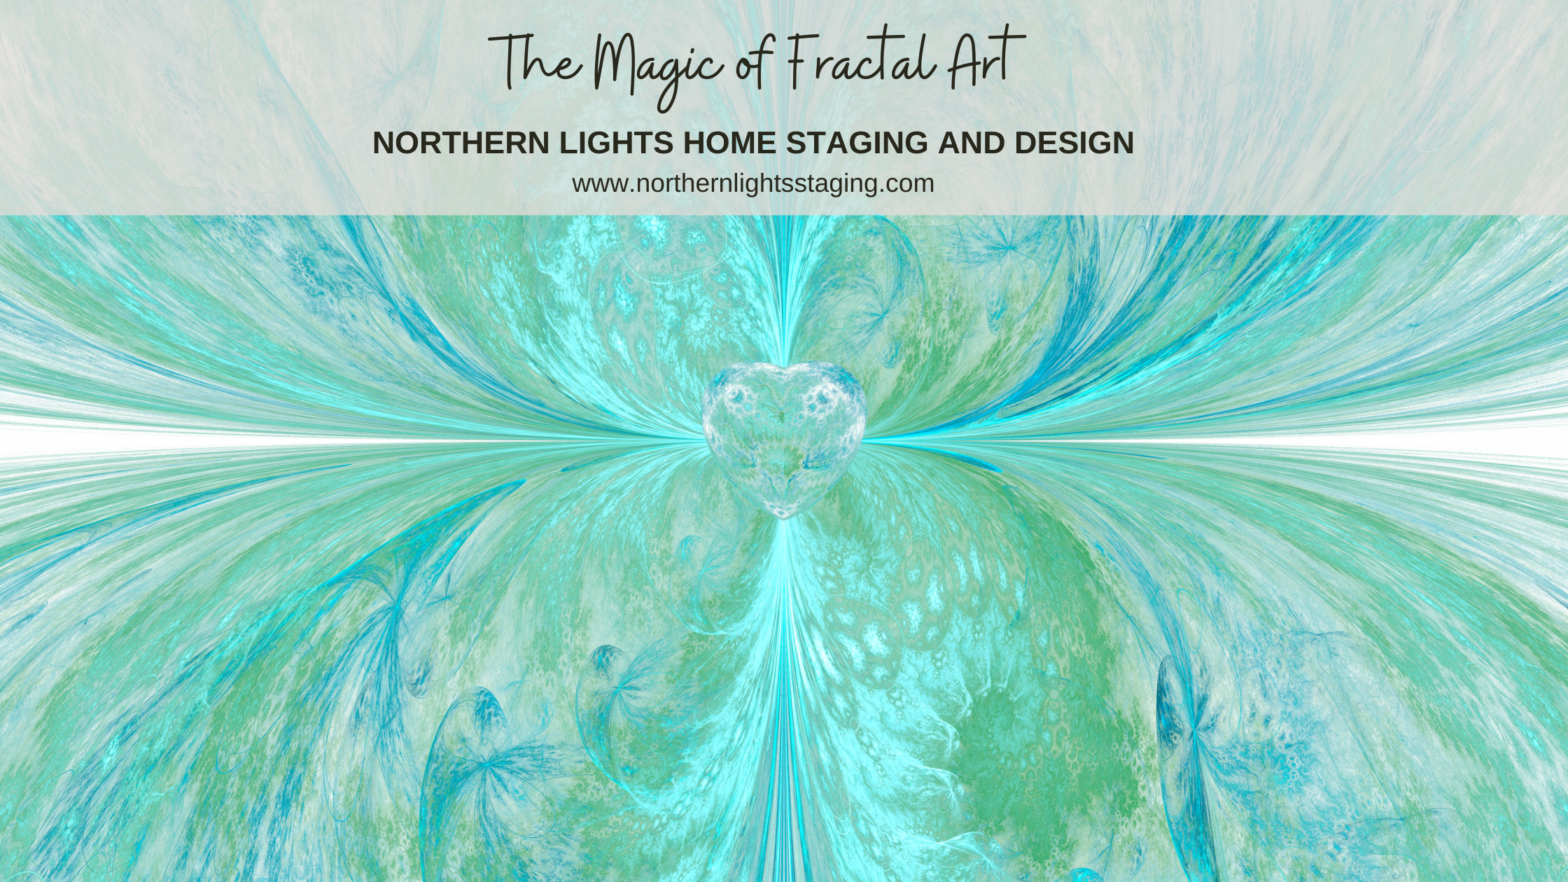 The magic of fractal art